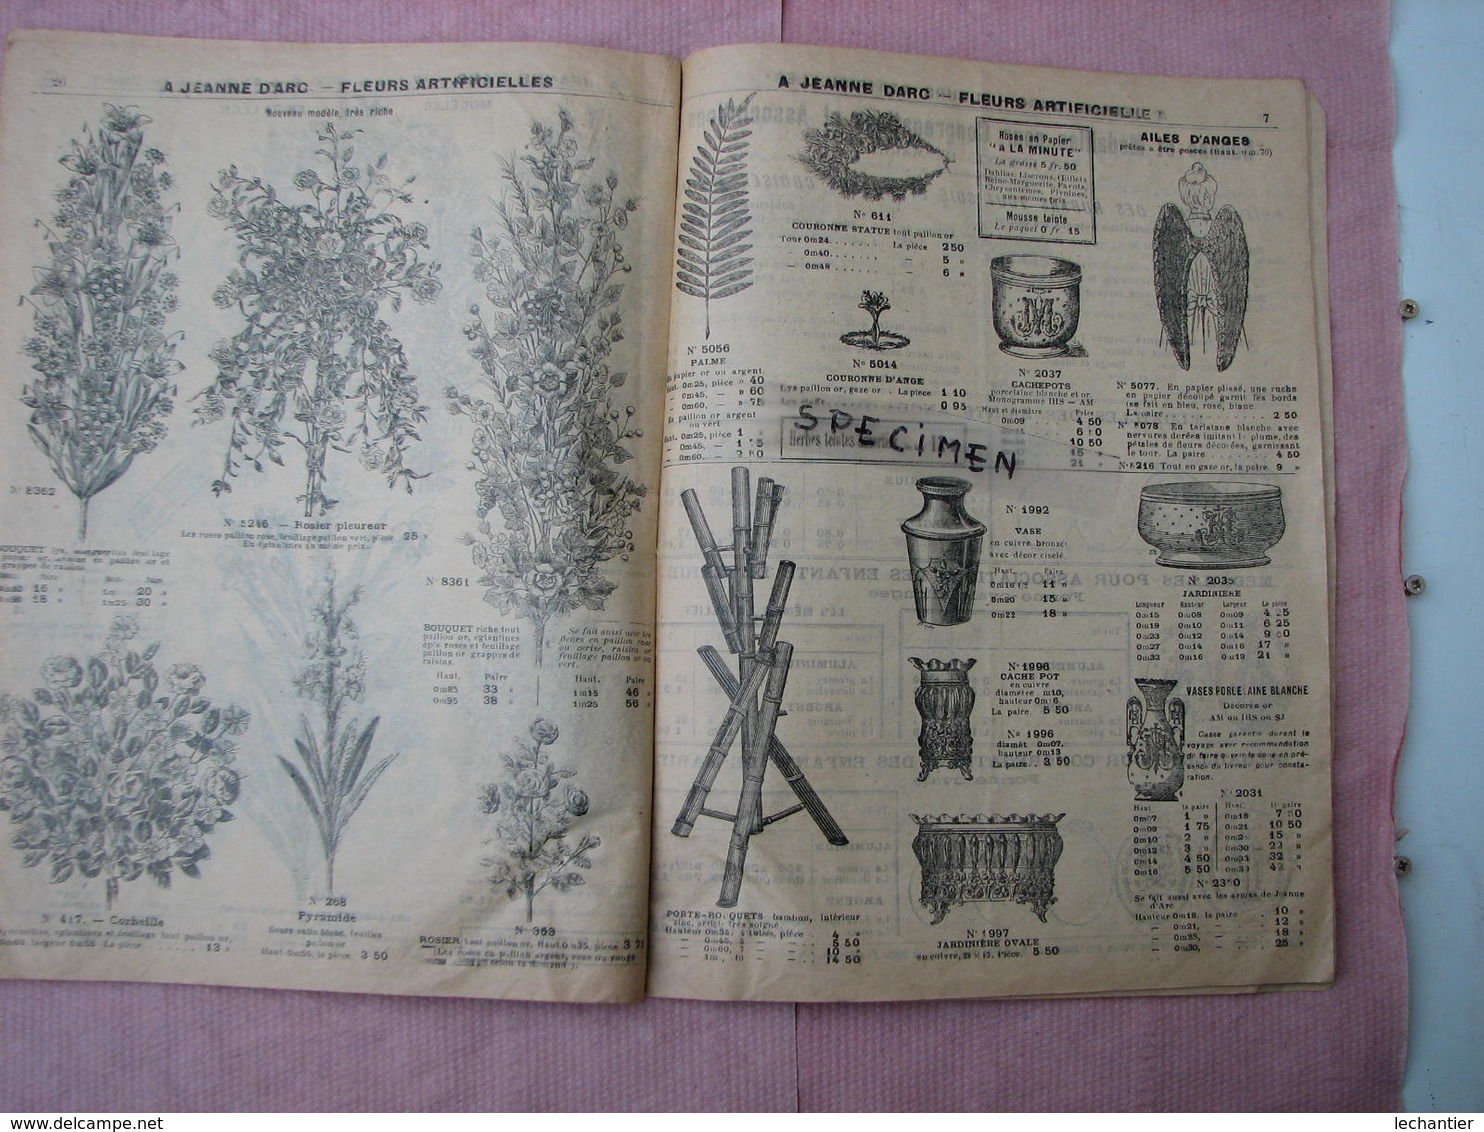 A Jeanne D'ARC H. Genin Paris  Fleurs Artficielles et plantes stérilisées. Fourn. et Orfevrerie RELIGIEUSES.